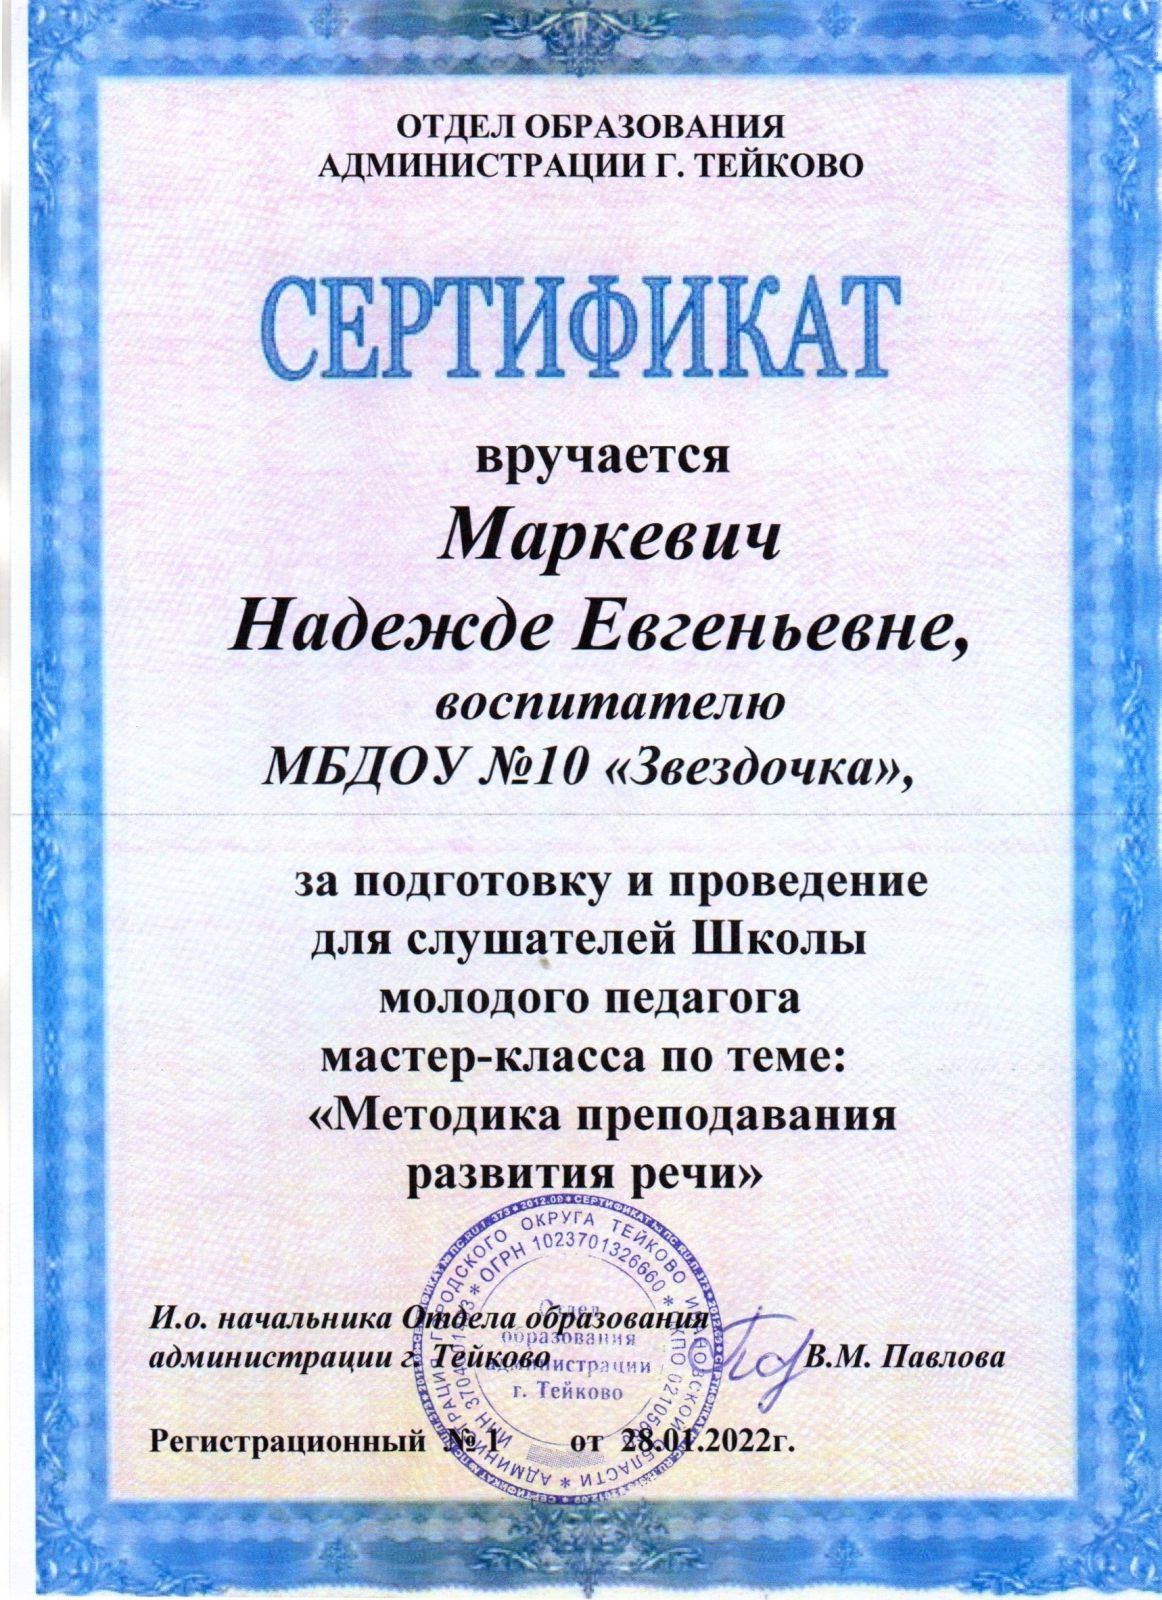 Сертификат Маркевич Н.Е. за организацию и проведение мастер-класса в рамках школы молодого педагога.